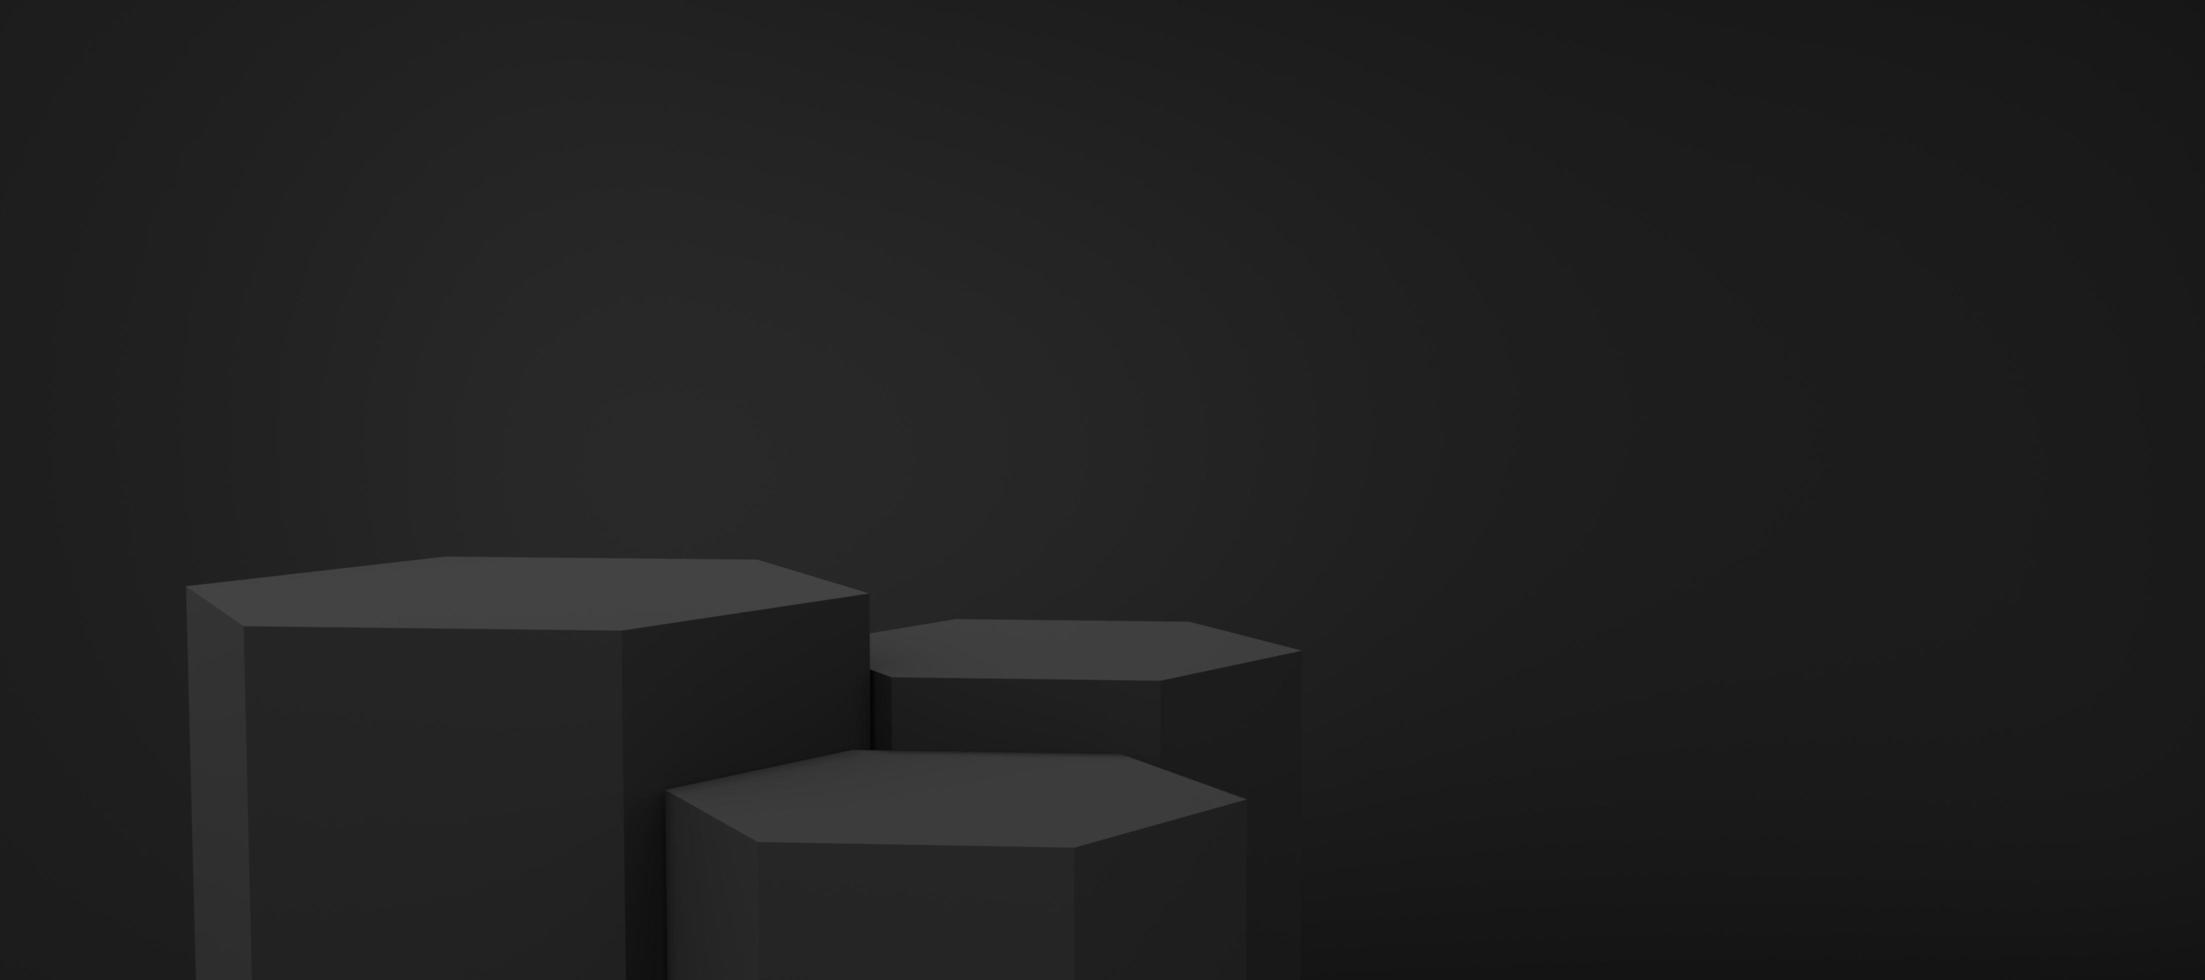 3 pódio de hexágono preto vazio flutuando no fundo do espaço de cópia preta. objeto de forma geométrica 3d estúdio mínimo abstrato. espaço de maquete de pedestal monótono para exibição de design de produto. renderização 3D. foto